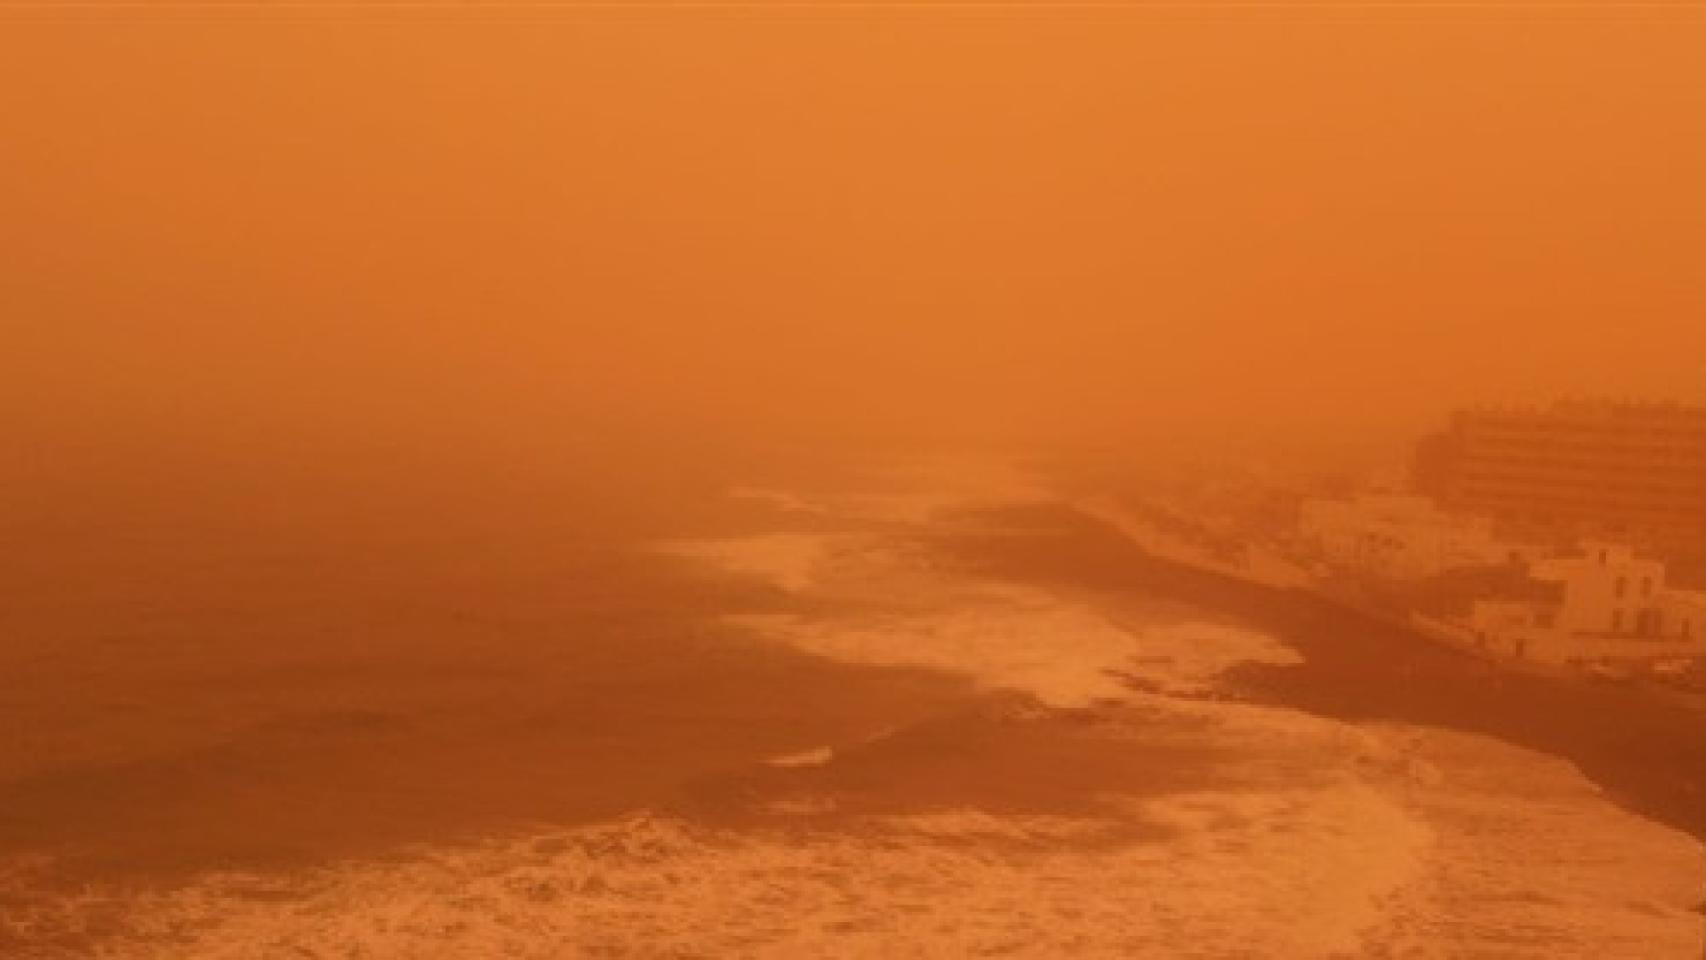 Imagen de Tenerife durante la supercalima de polvo desértico del 29 de enero de 2022.